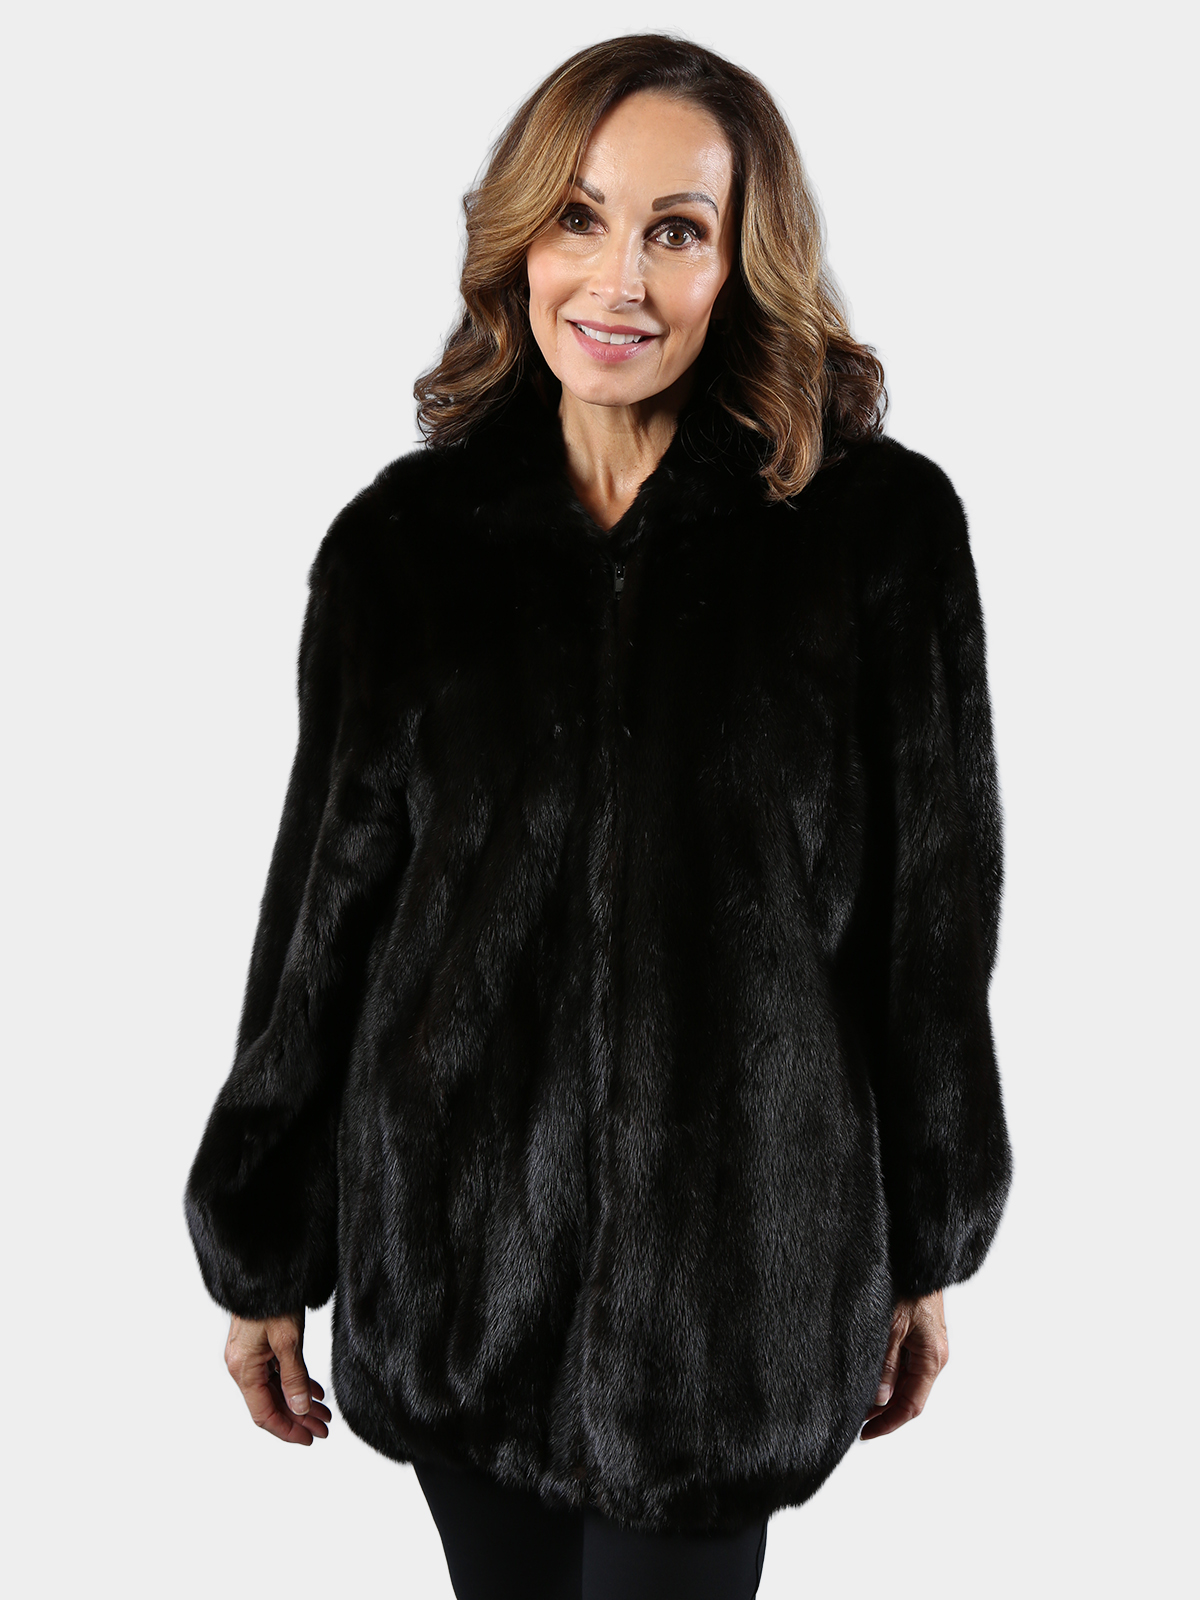 Woman's Ranch Female Mink Fur Jacket